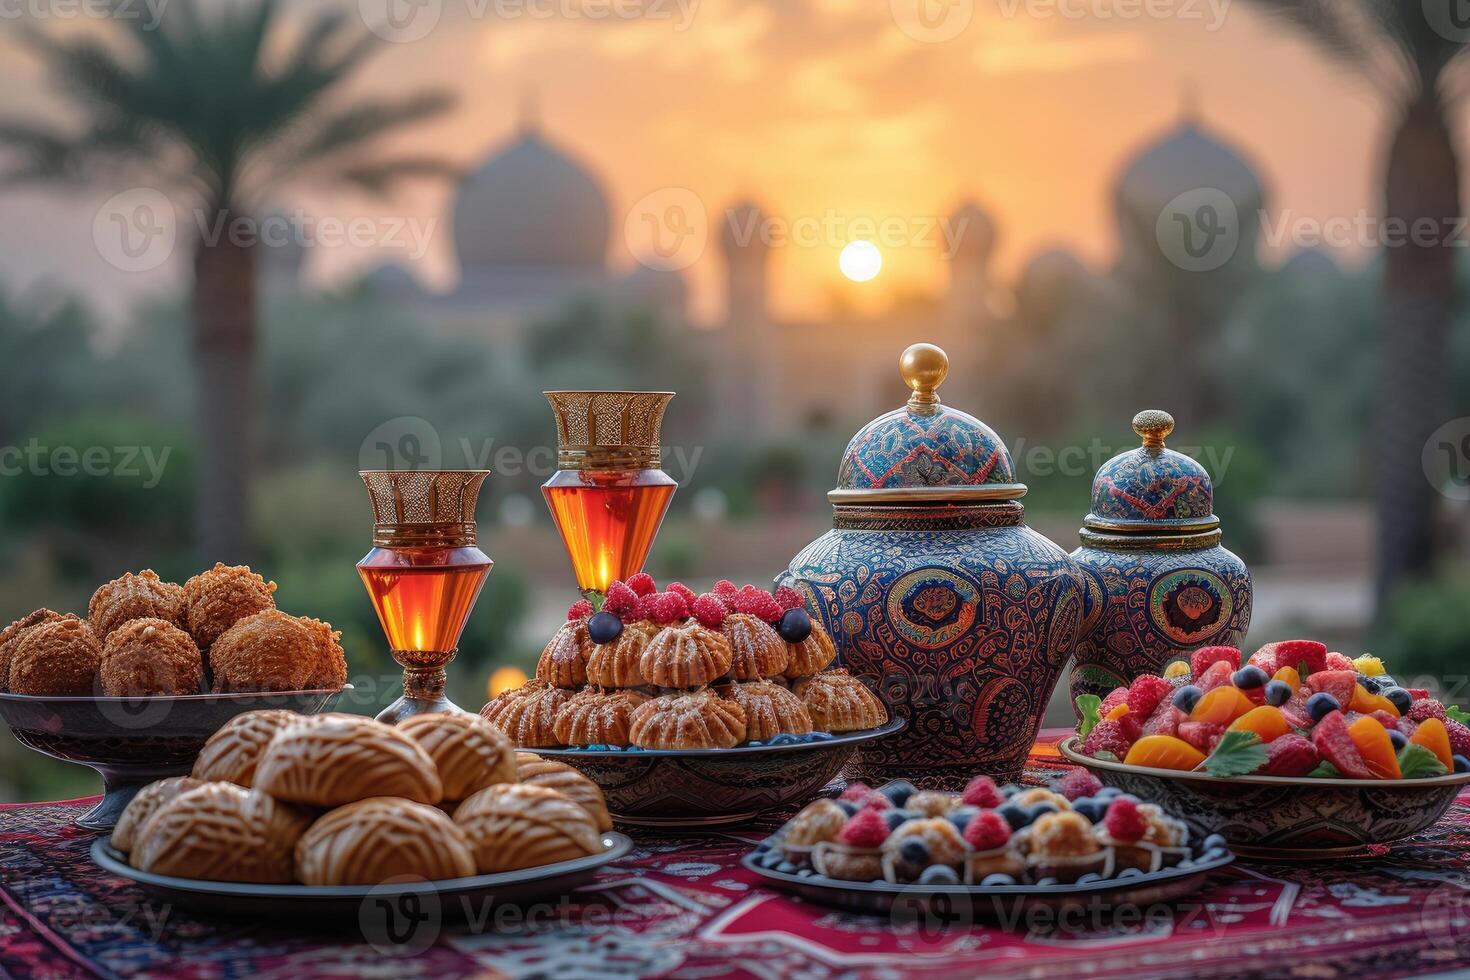 ai generato servi vario pasto per iftar Ramadan pubblicità cibo fotografia foto